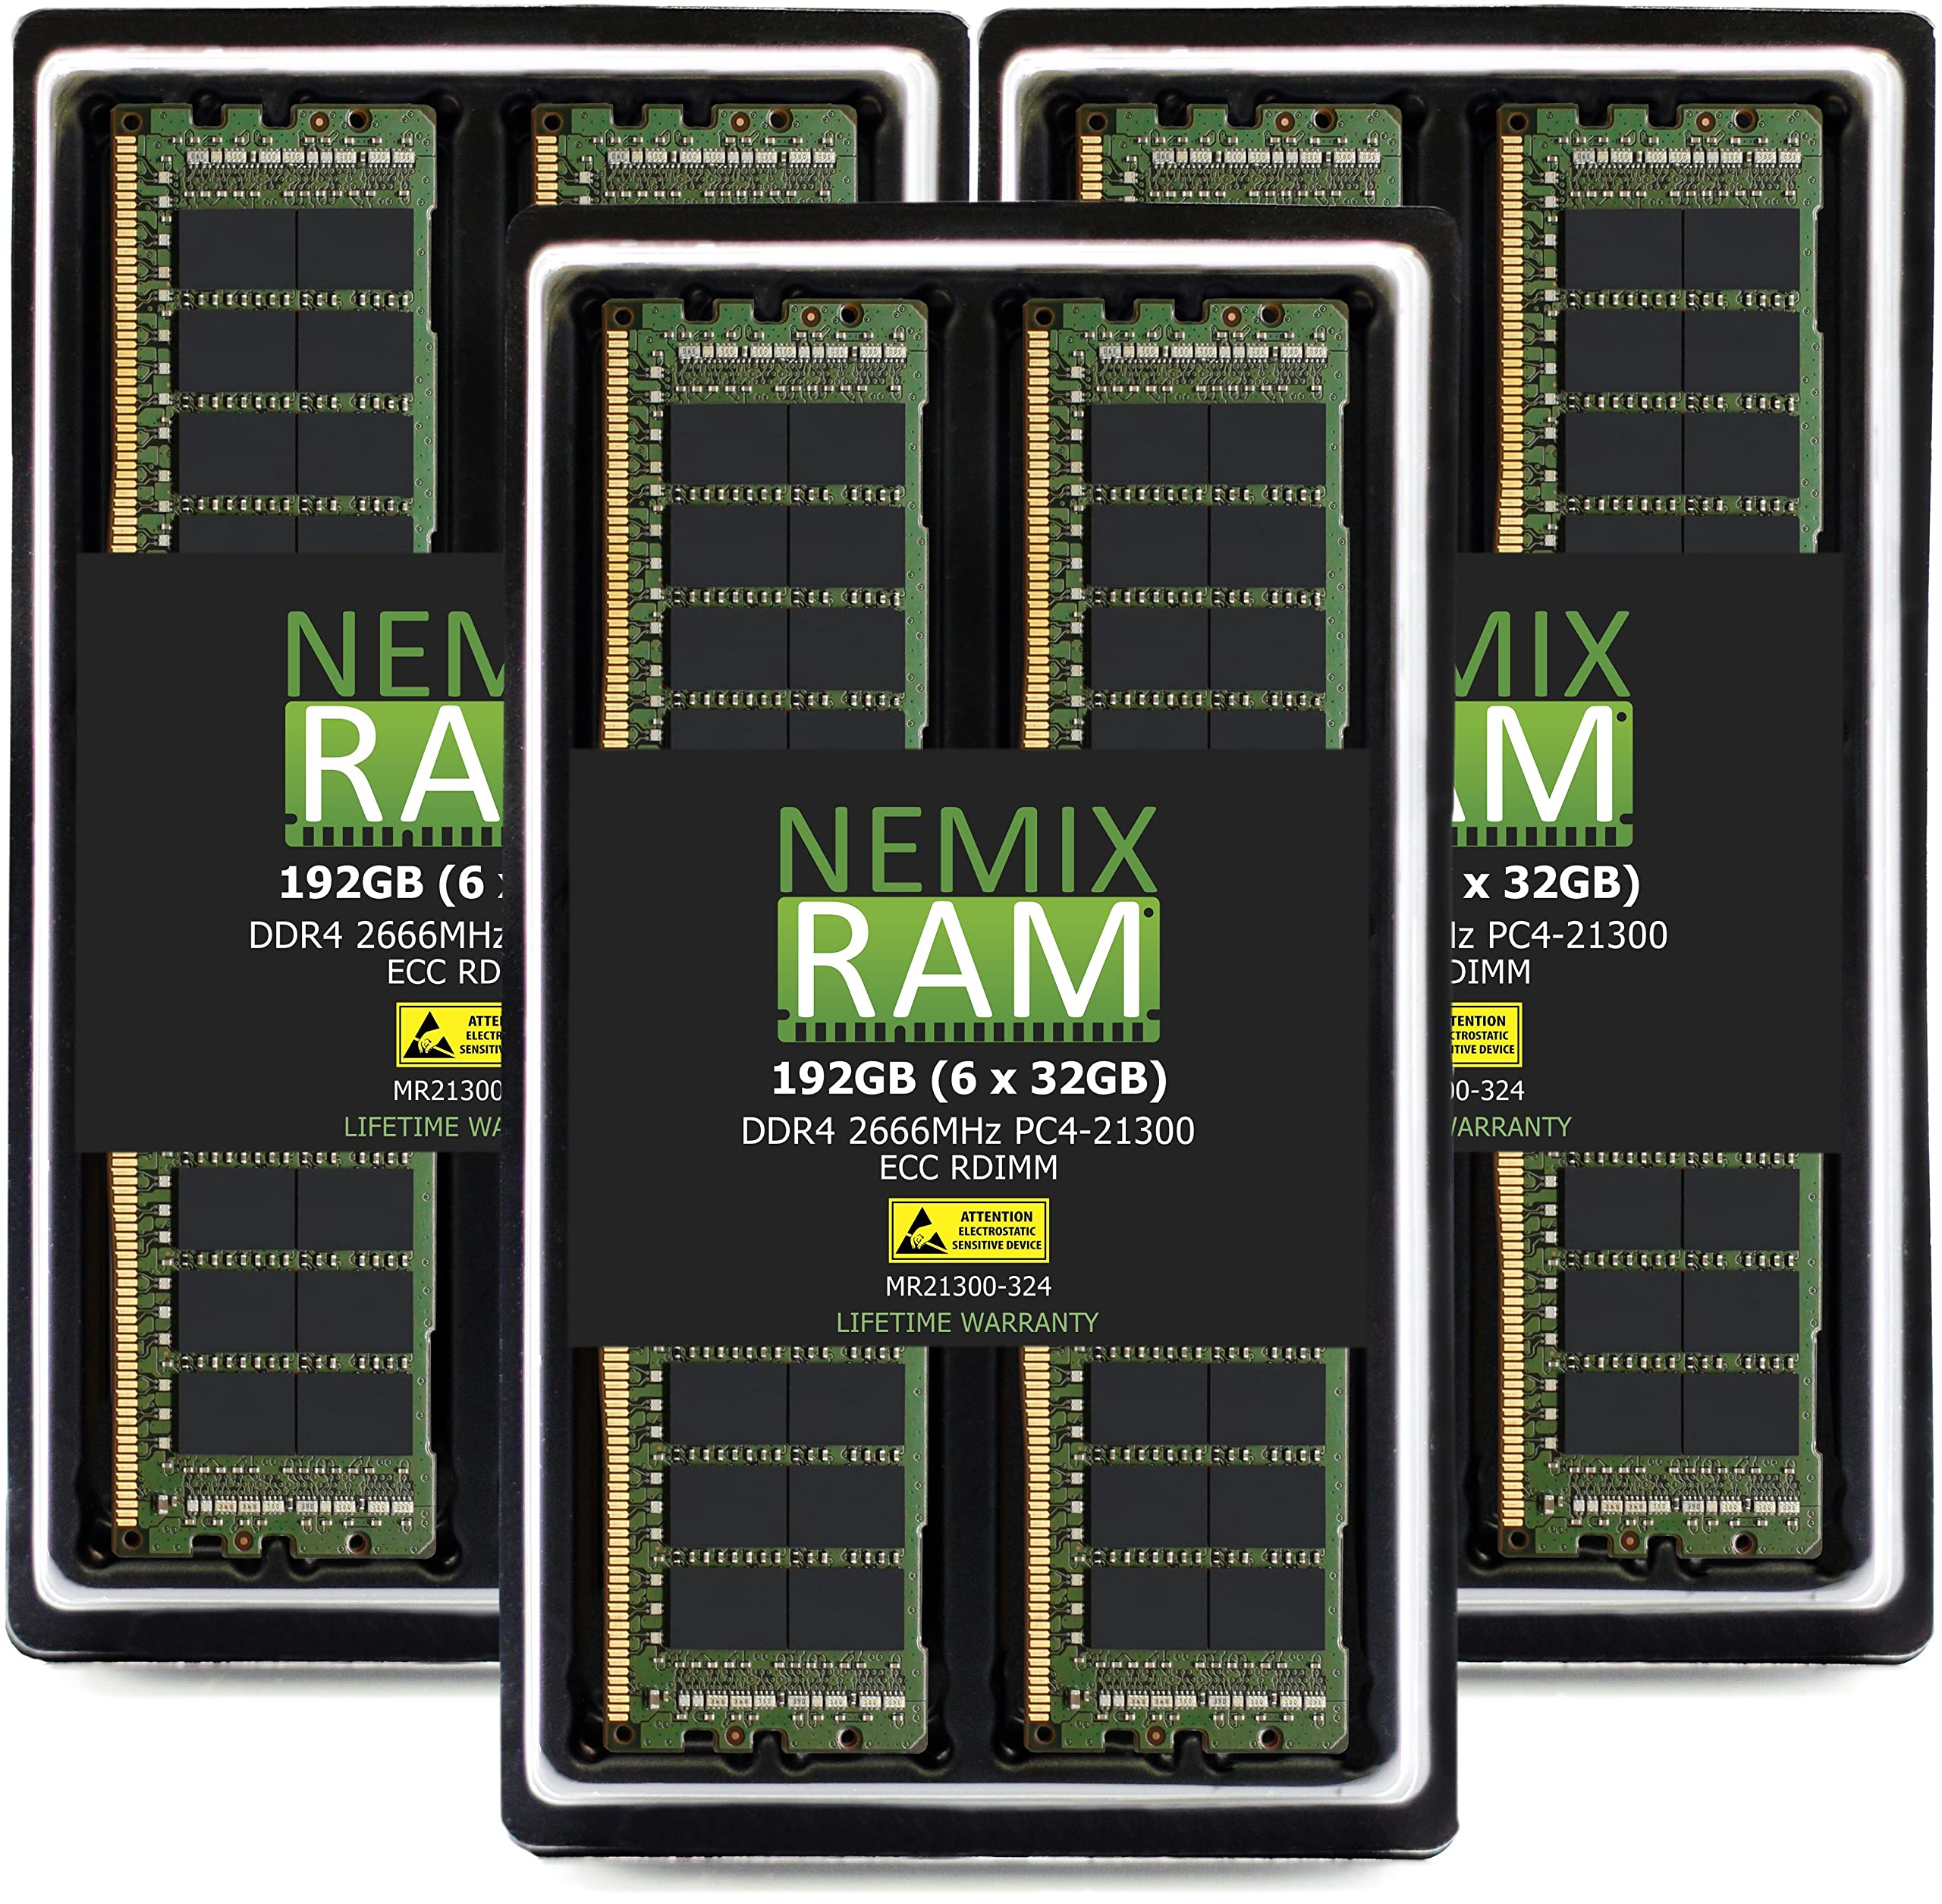 NEMIX RAM 192GB 6x32GB DDR4-21300 PC4-2666 ECC RDIMM レジスタードサーバーメモリアップグレード Dell Powe